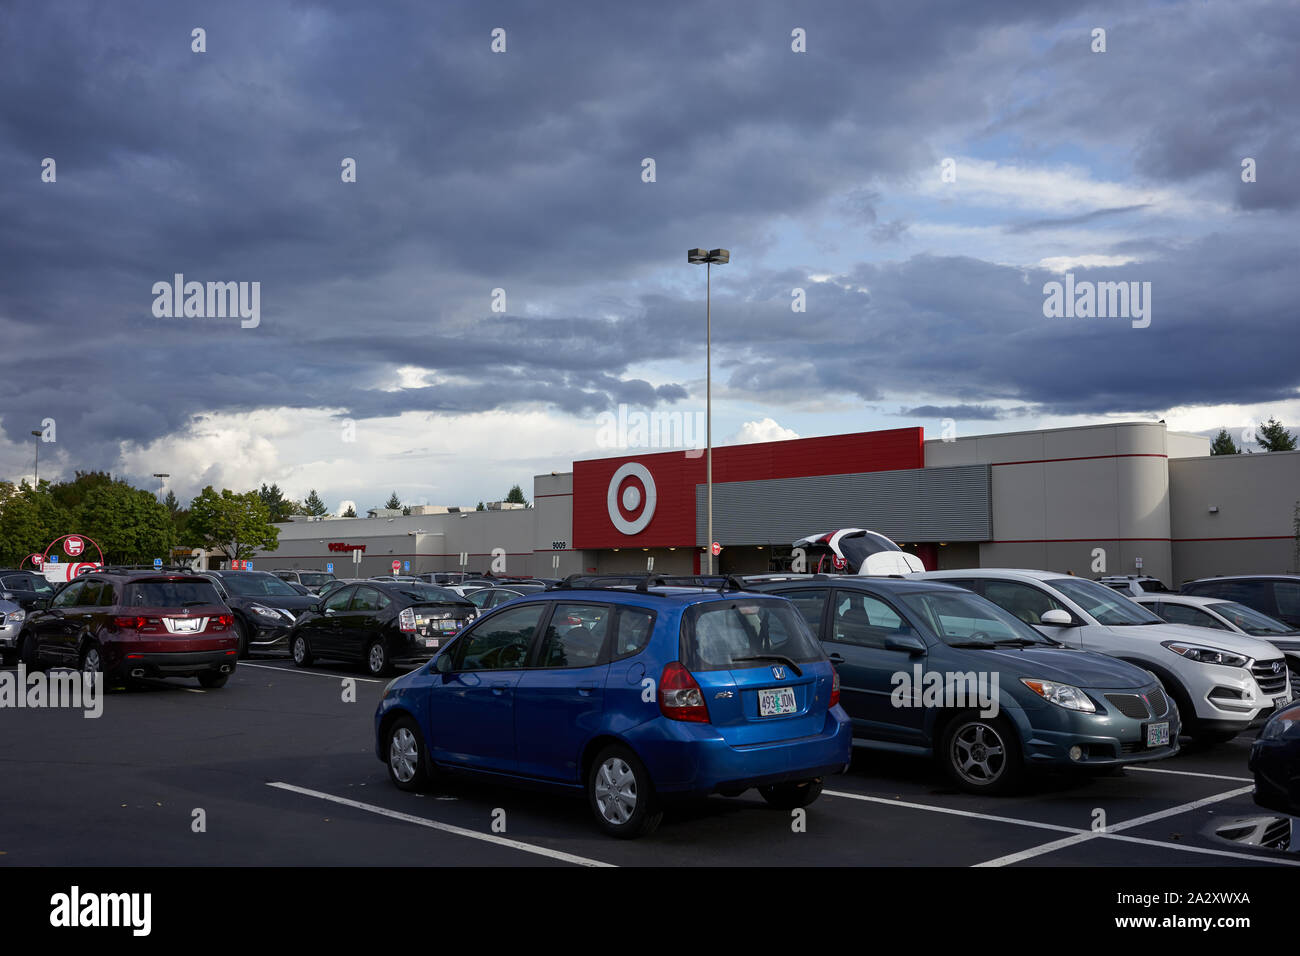 Un magasin Target à Tigard, dans la banlieue sud-ouest de la région métropolitaine de Portland, en Oregon, vu le mercredi 18 septembre 2019. Banque D'Images